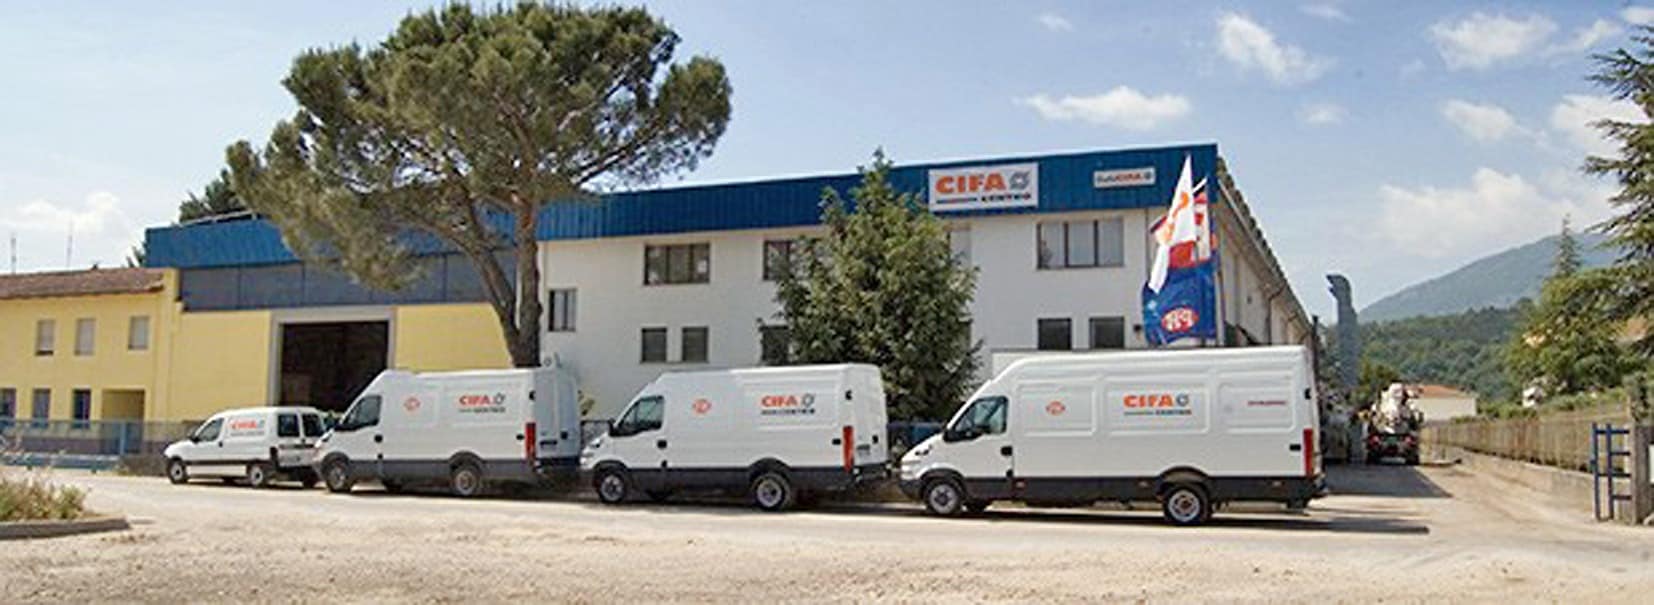 Cifacentro SpA è stata fondata nel 2000 e rappresenta un punto di riferimento in Umbria e Toscana per tutti gli operatori dei settori del calcestruzzo, dei lavori stradali e dell’edilizia in genere